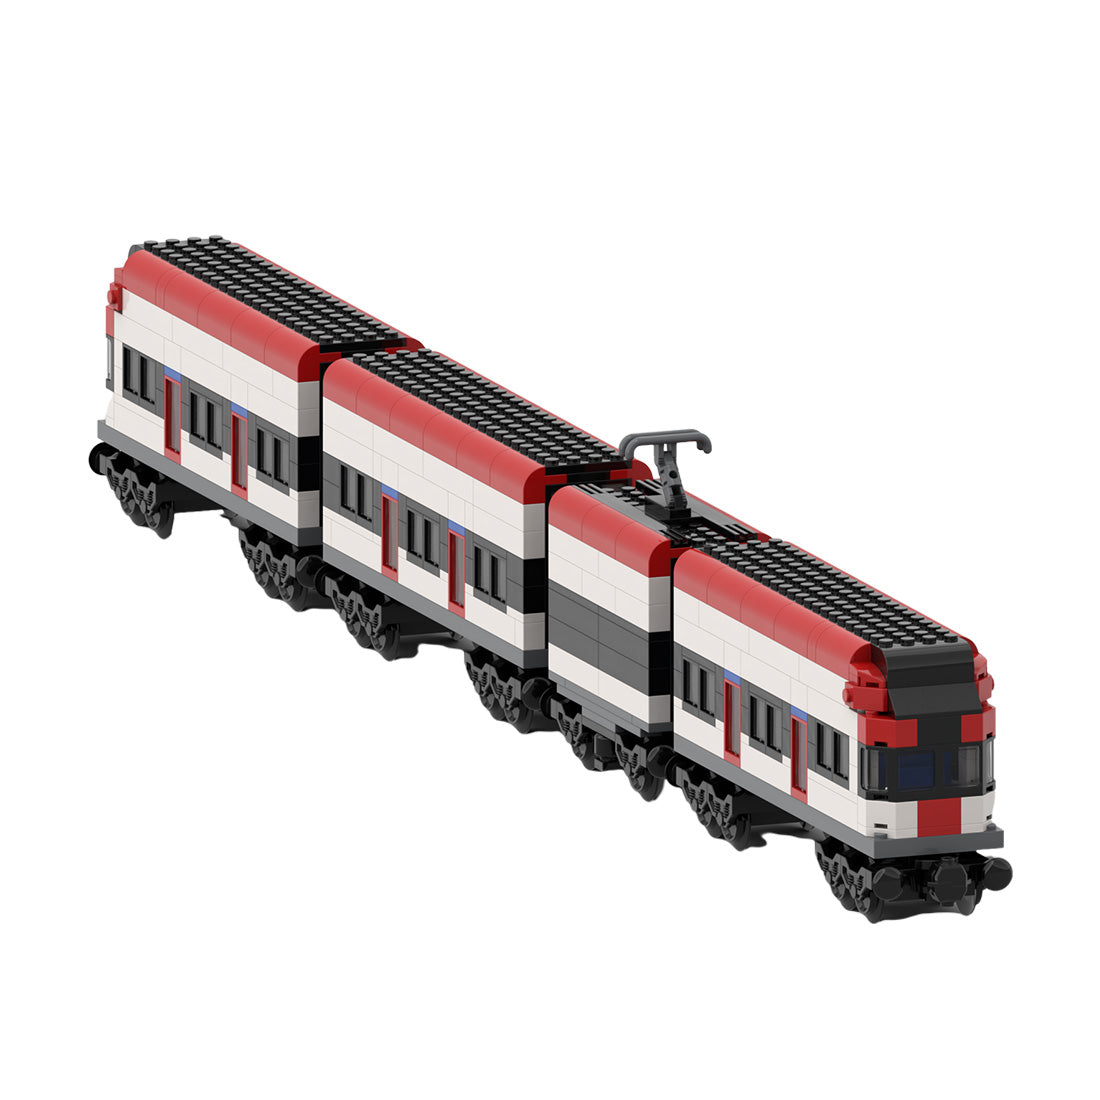 MOC-164031 Swiss Electric Train - Static